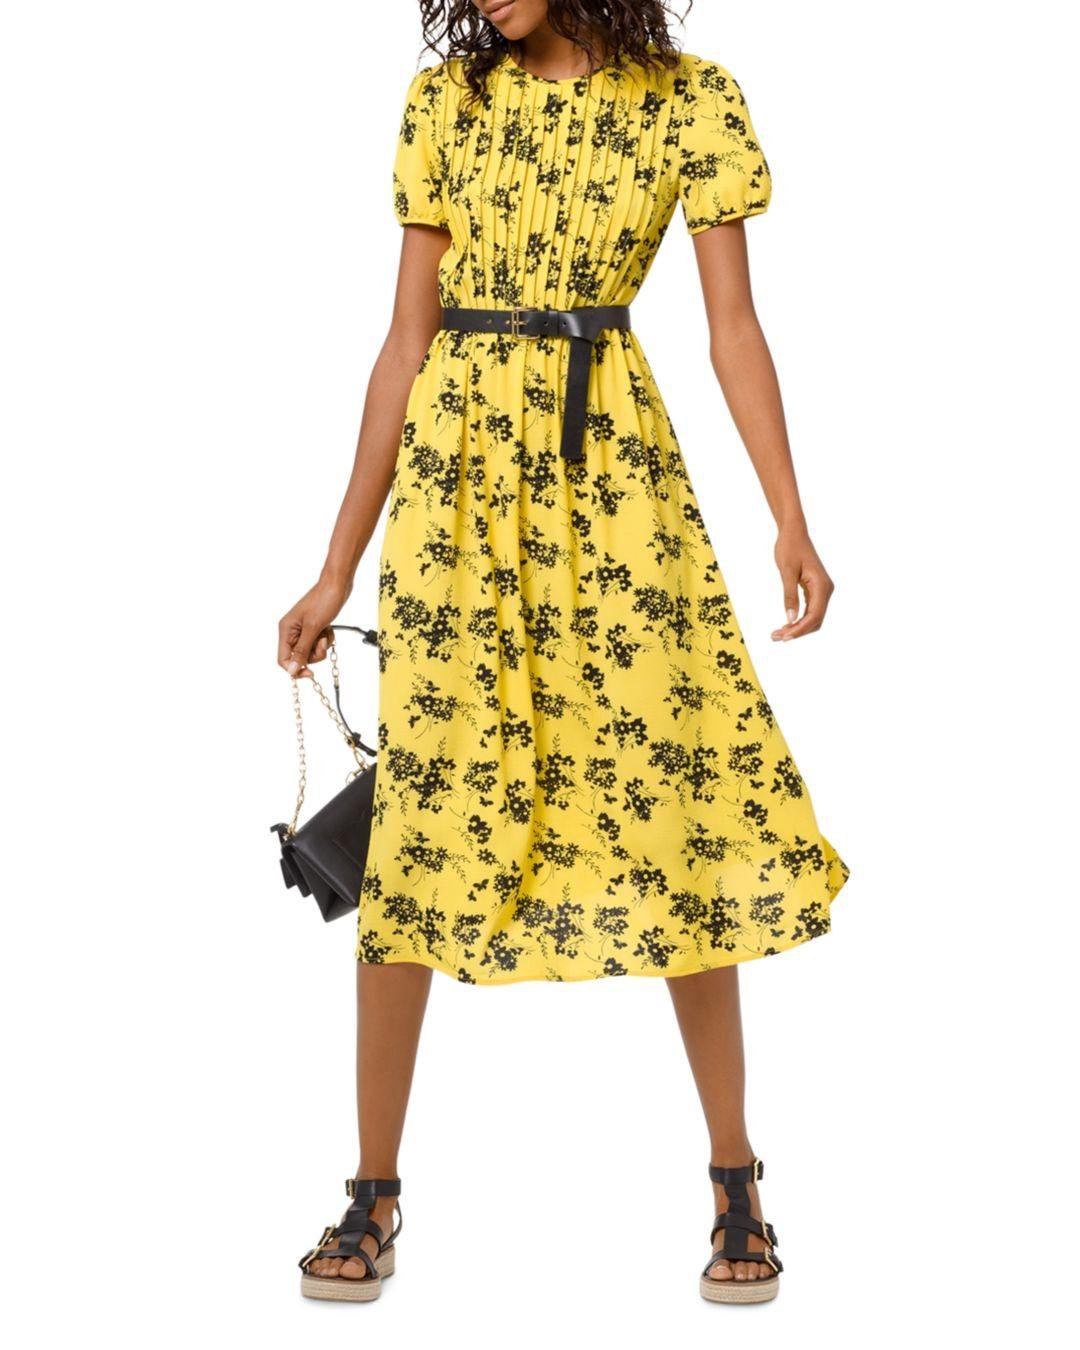 Descubrir 44+ imagen michael kors yellow dress